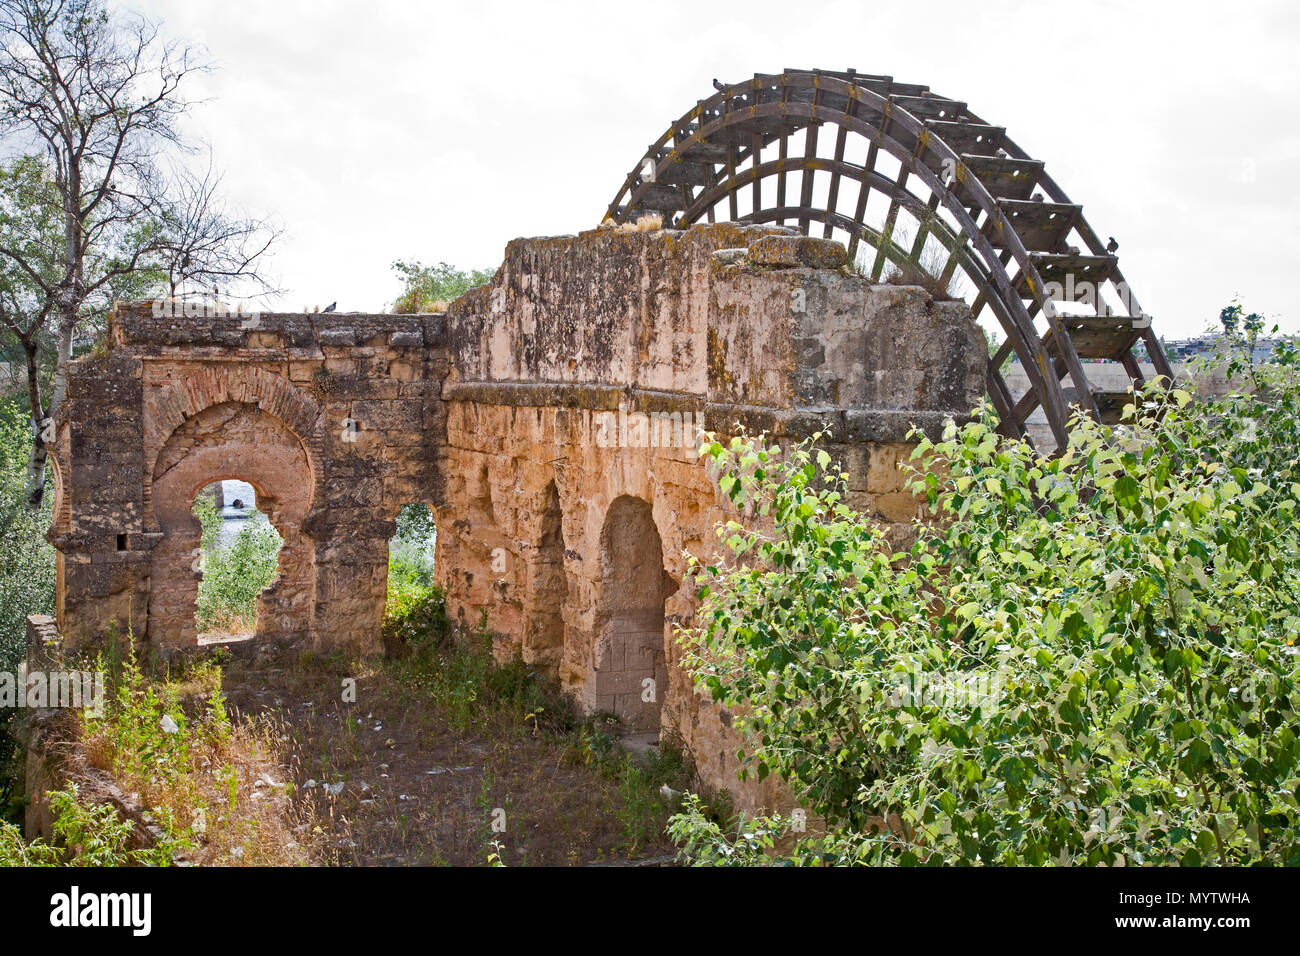 Mai 28, 2016 - Cordoba, Spanien - Die römische Architektur einer Runde Wasser Rad wurde aufgegeben Stockfoto